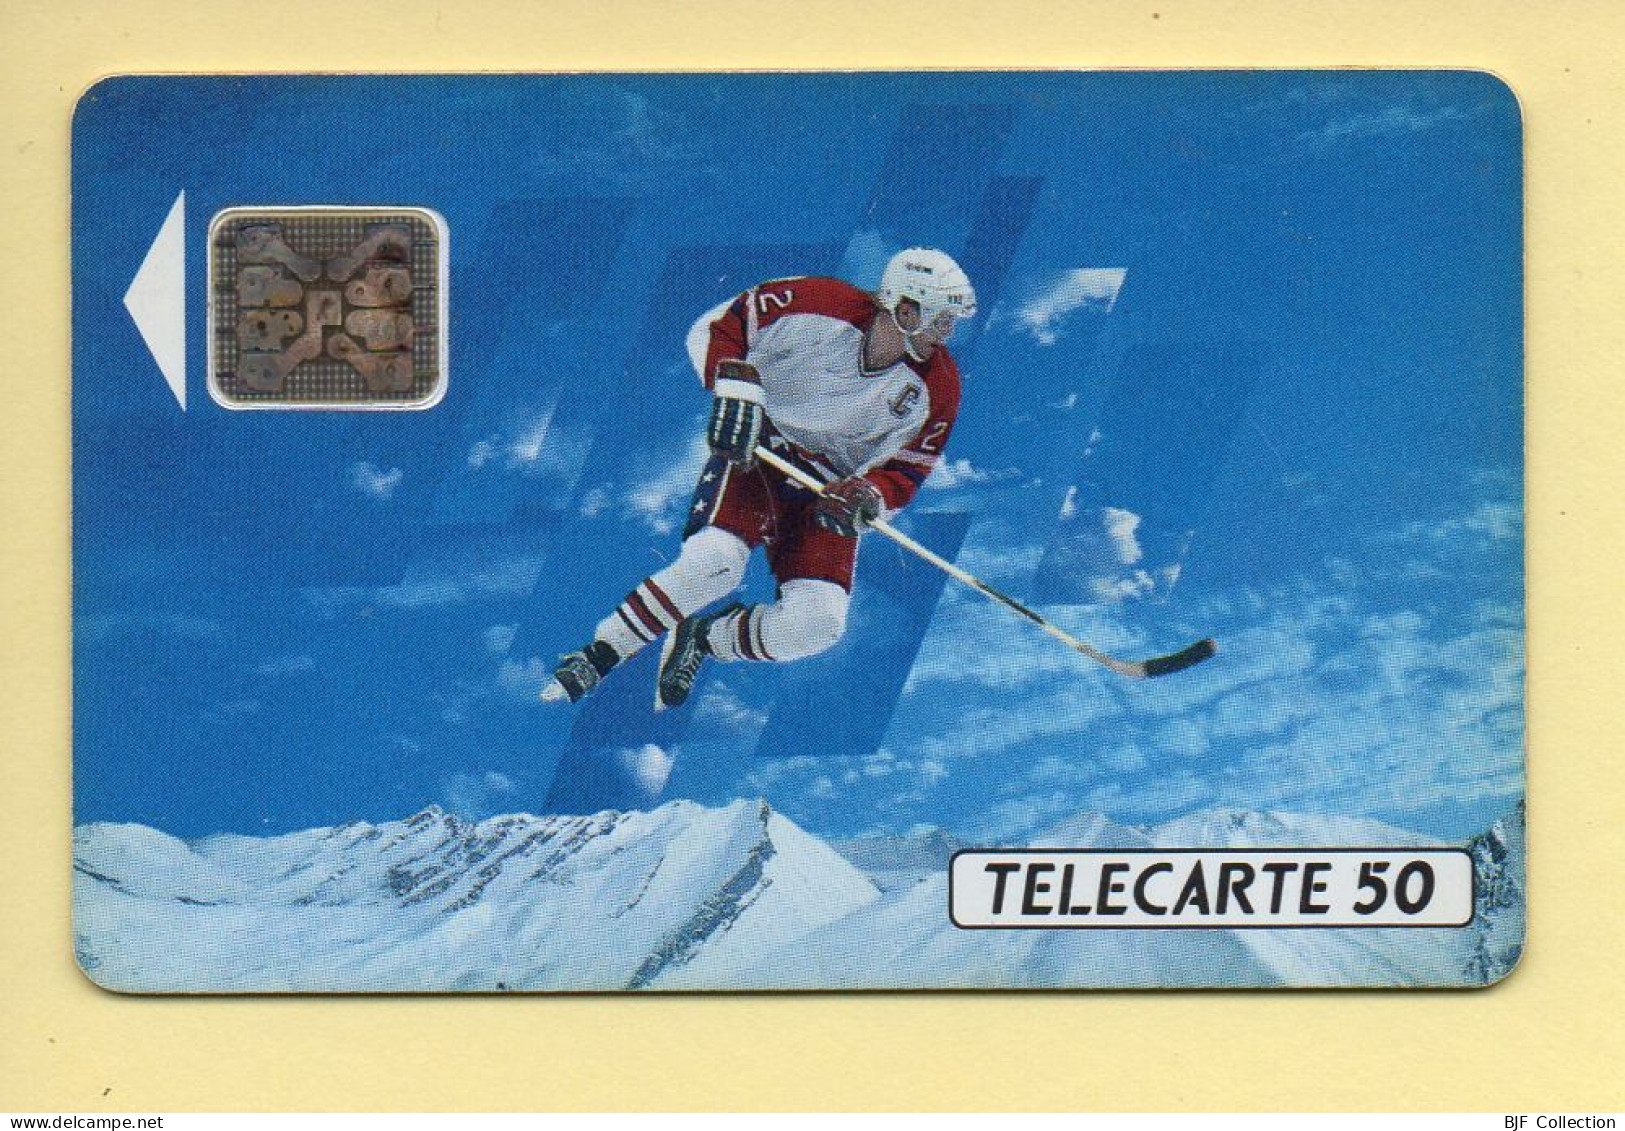 Télécarte 1991 : JOUEUR DE HOCKEY / 50 Unités / Numéro 32290 / 10-91 / Jeux Olympiques D'Hiver ALBERTVILLE 92 - 1991